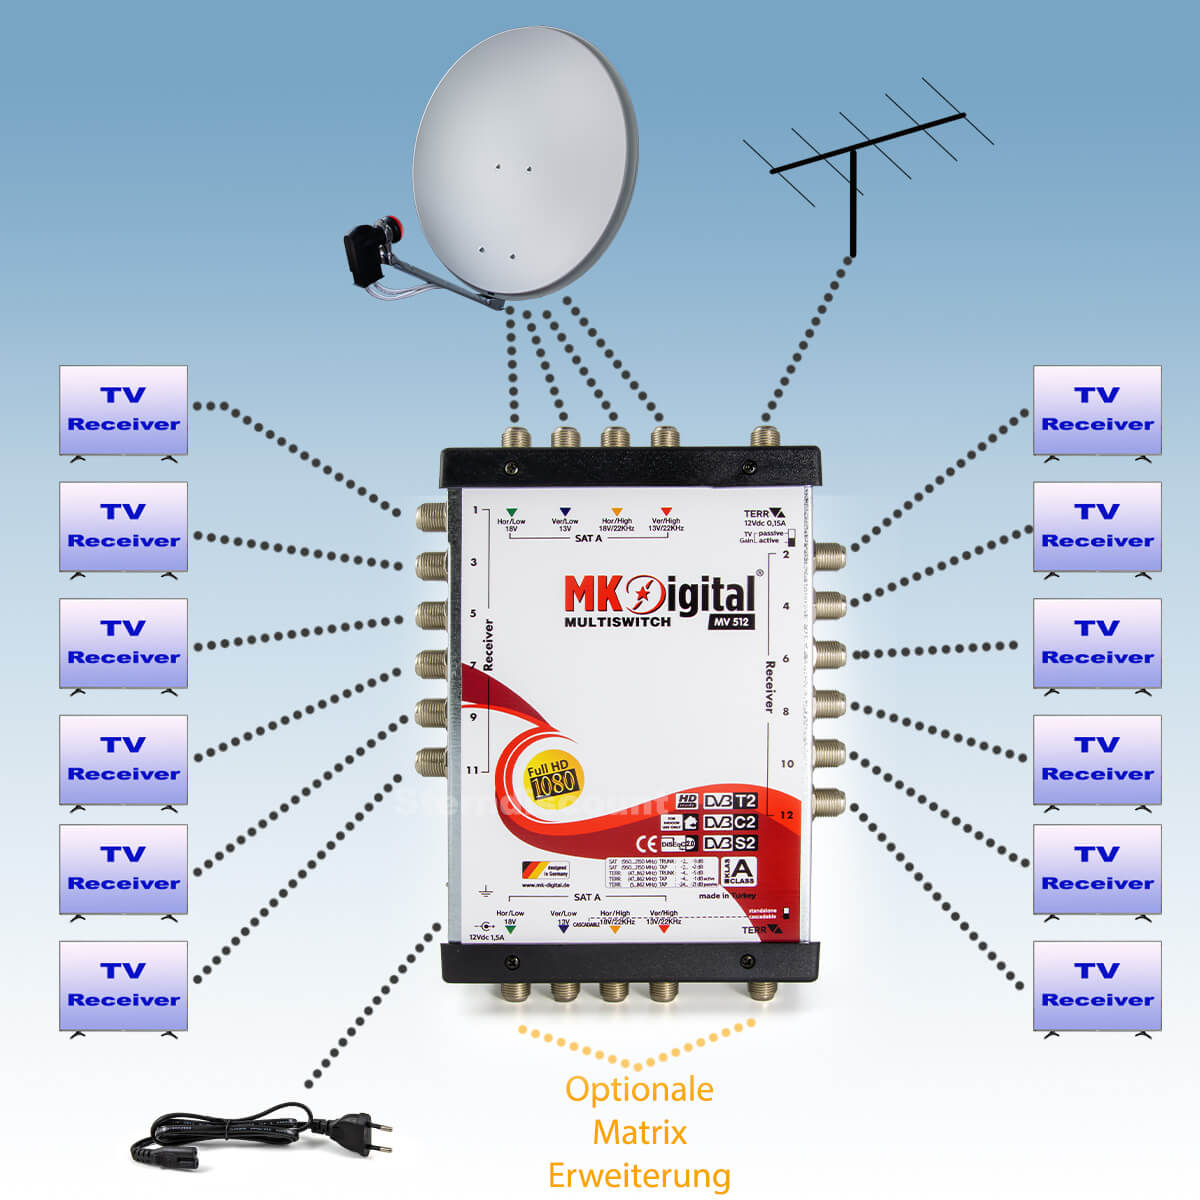 MK-Digital-Multischalter-5-12-anschliessen-beispiel